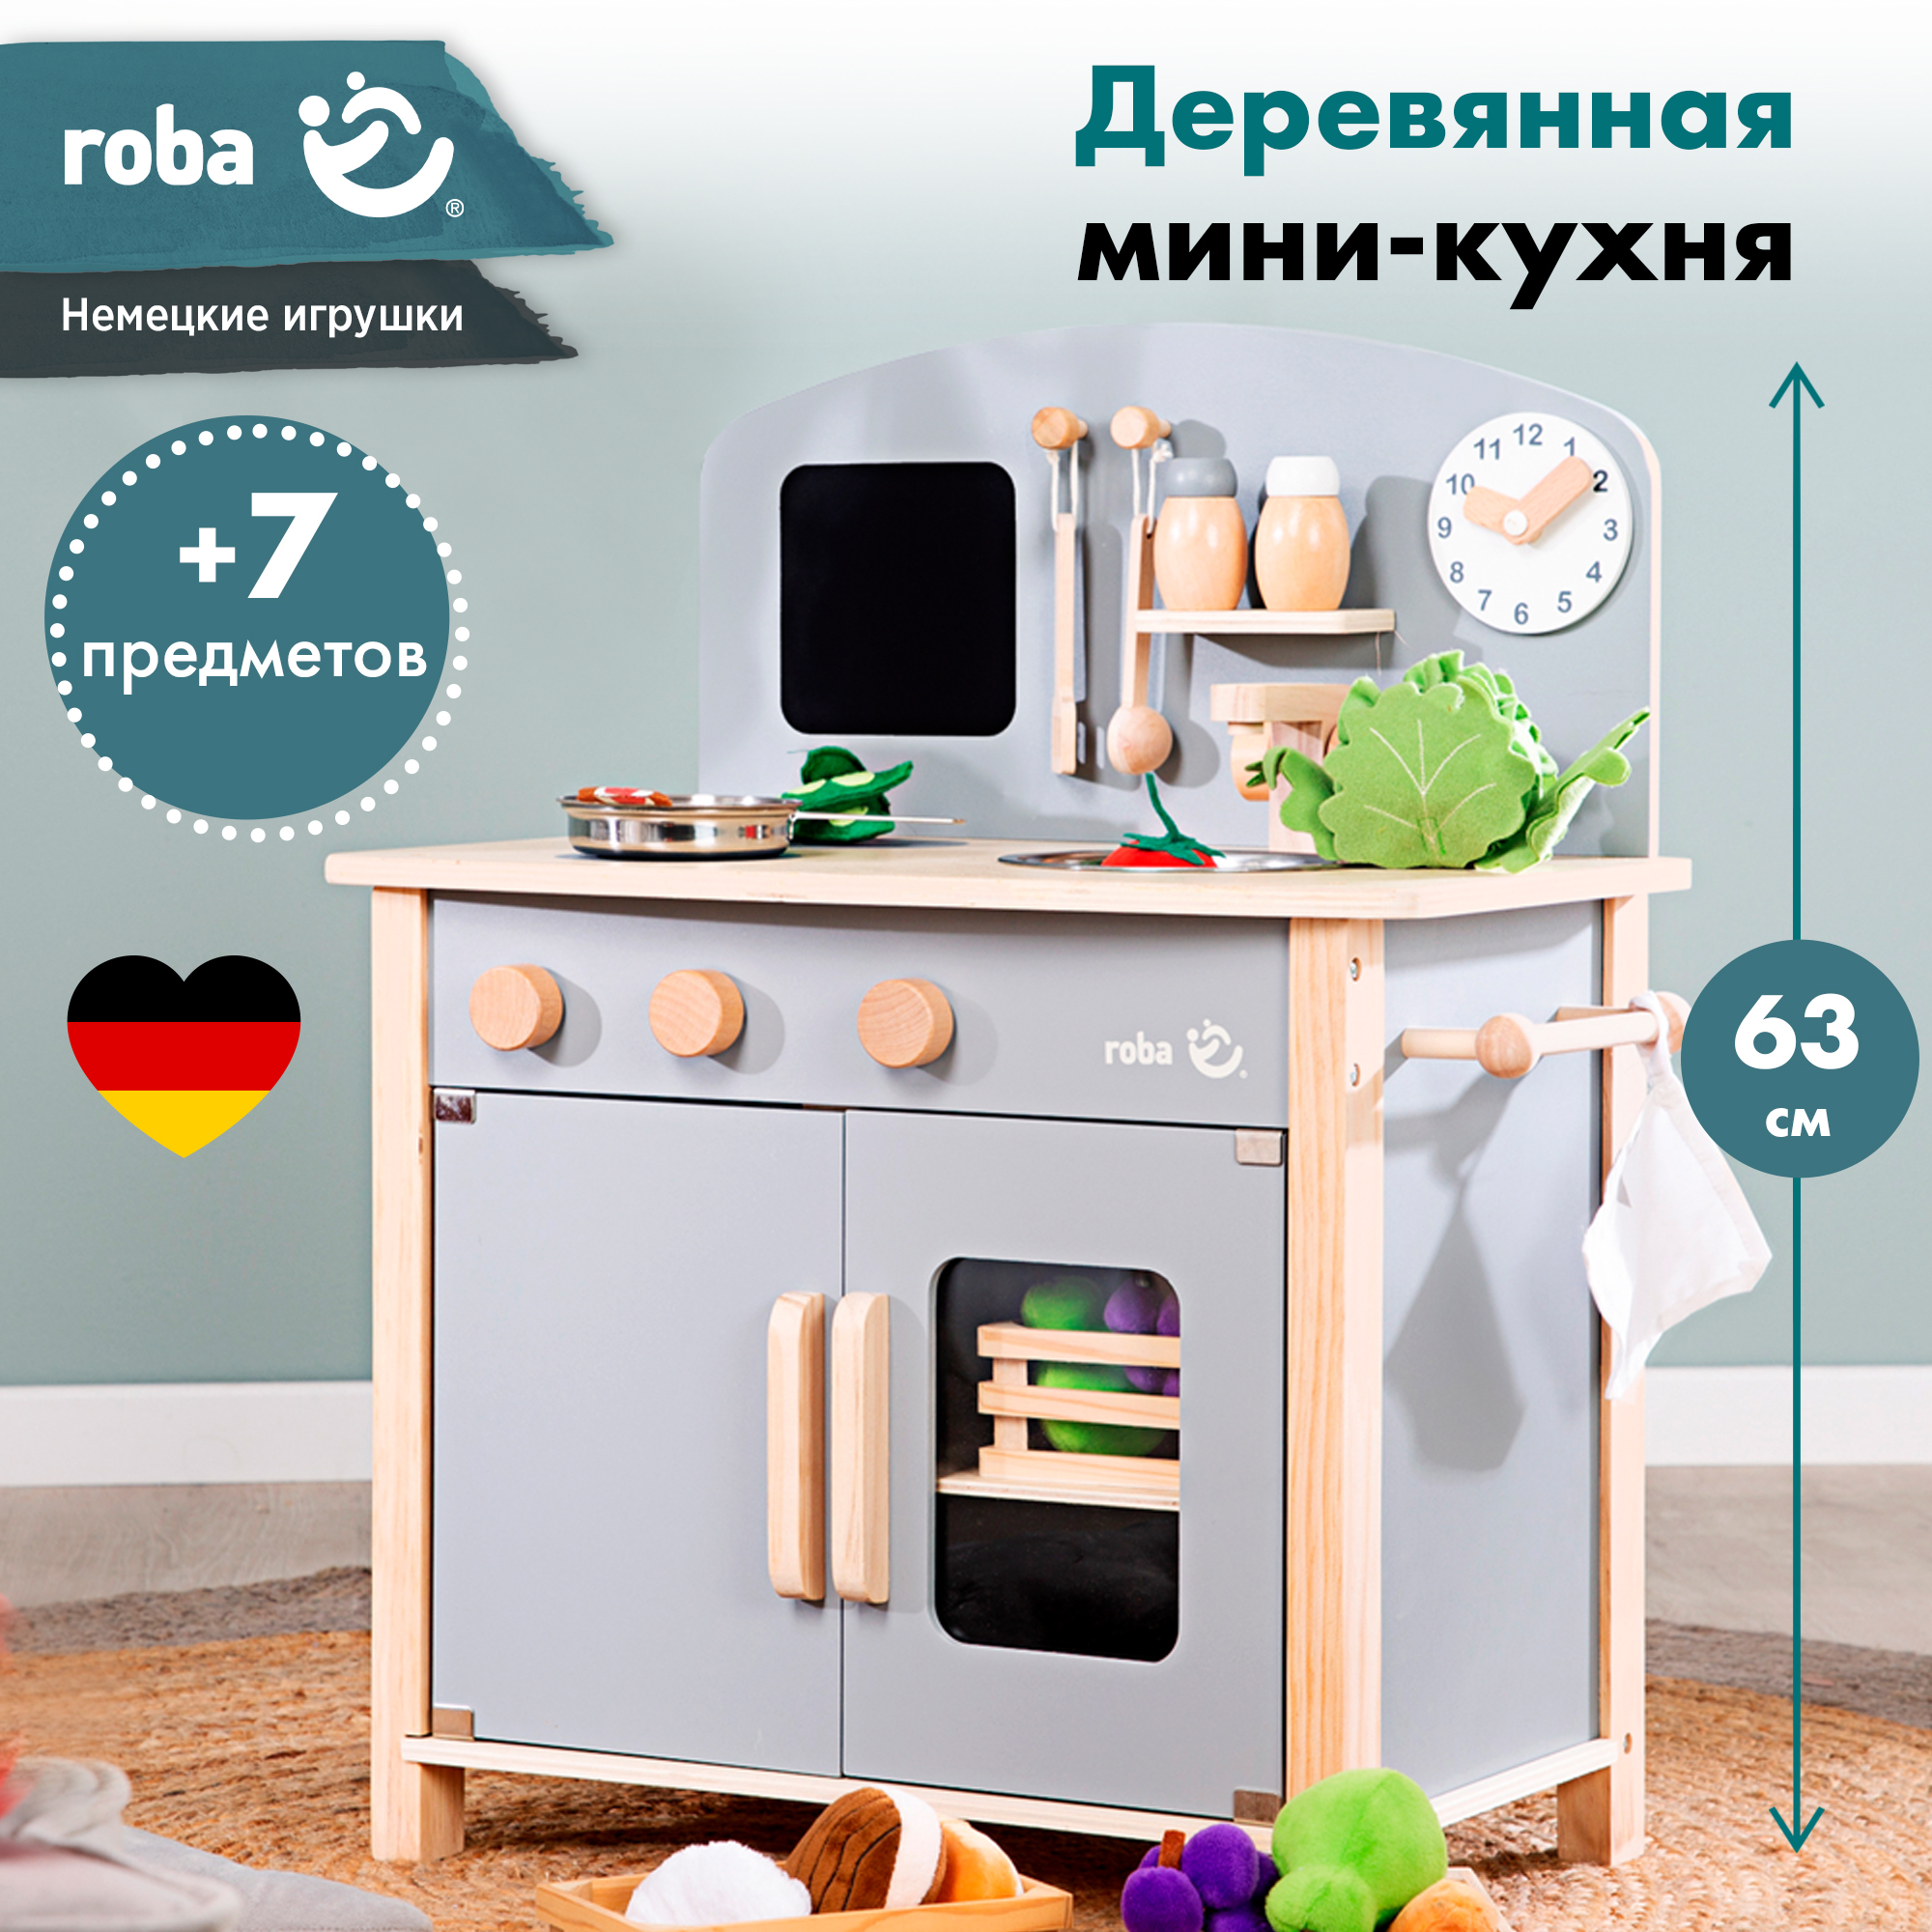 Кухня детская игровая Roba c 2 конфорками, раковиной, краном и аксессуарами, серый